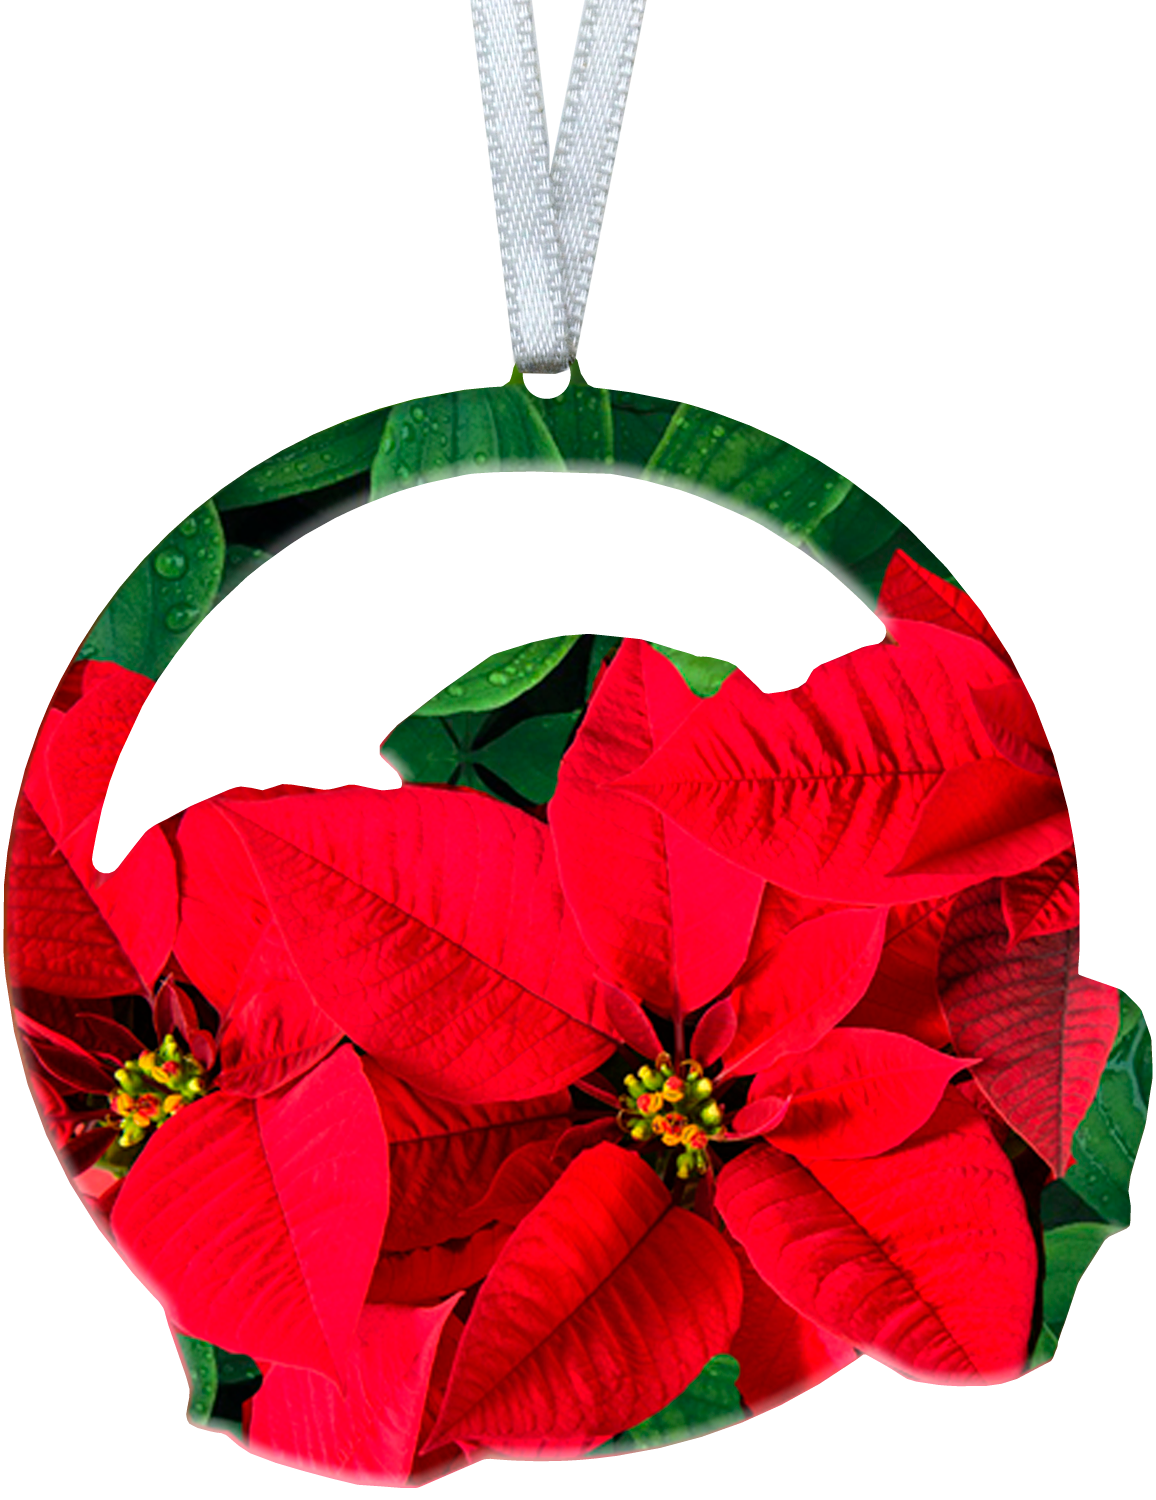 Poinsettia 4 inch ornament